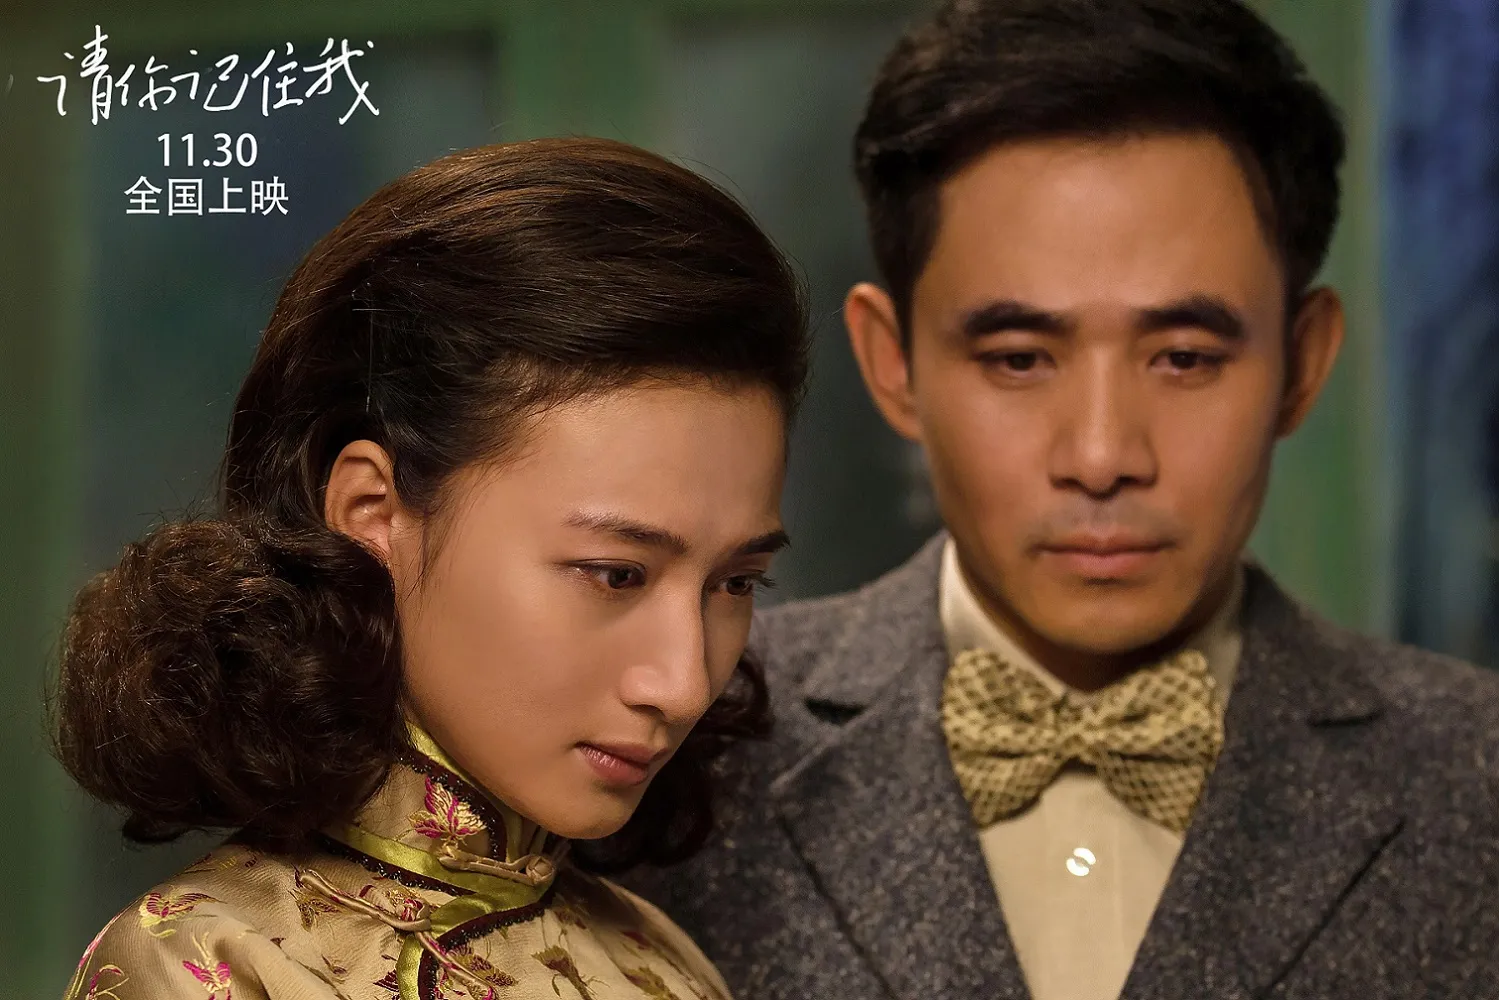 Actors Wenjuan Feng, Jia Yiping. JPG